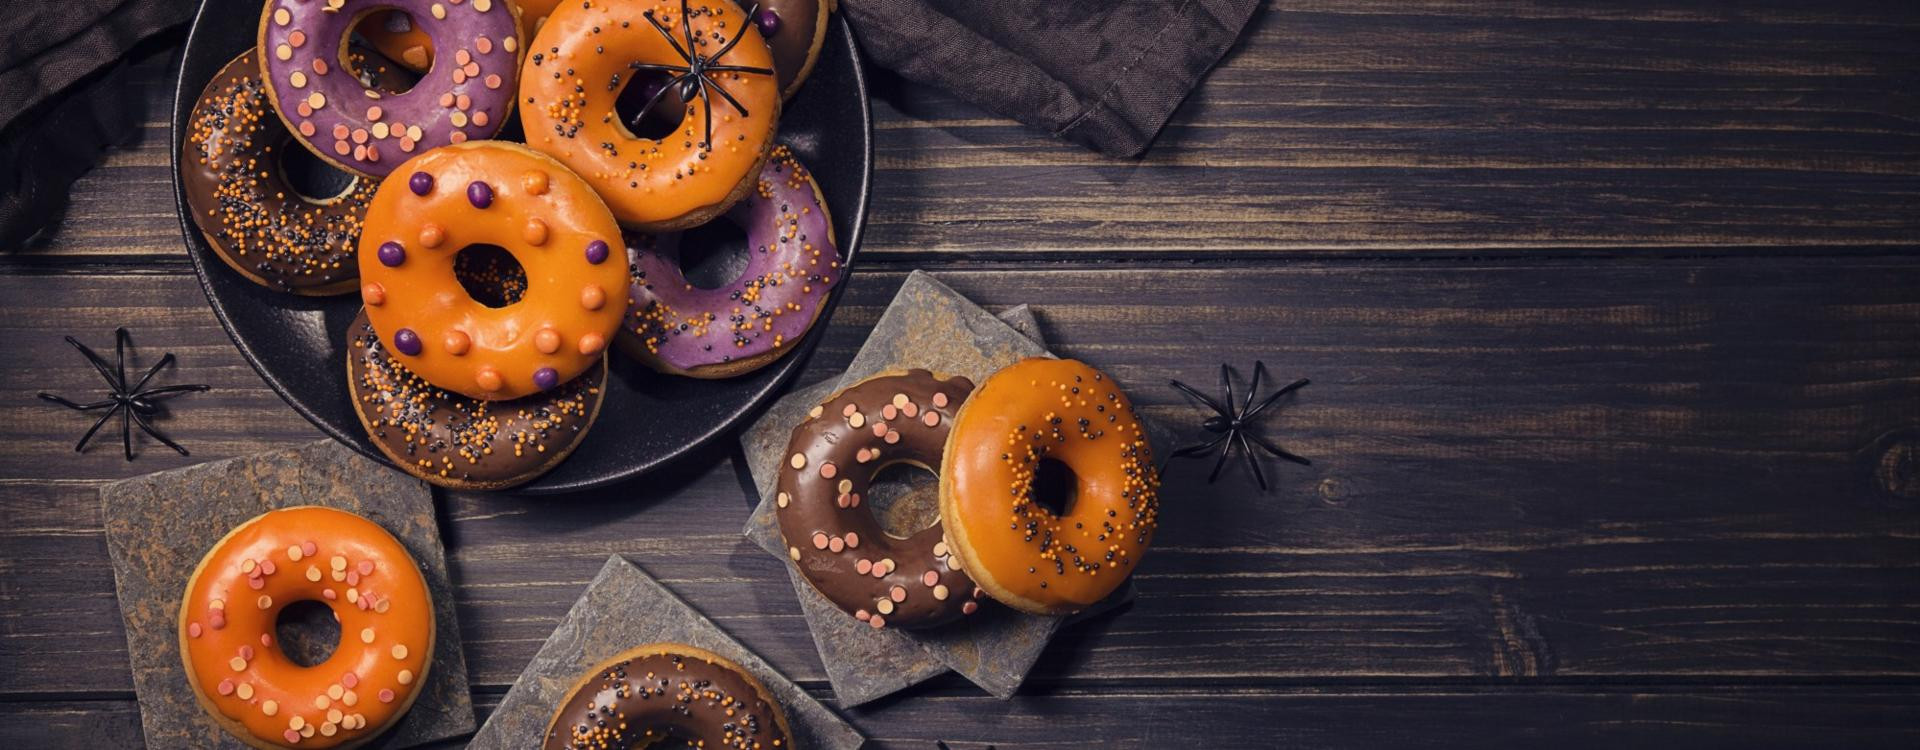 Donuts pralinés d'halloween